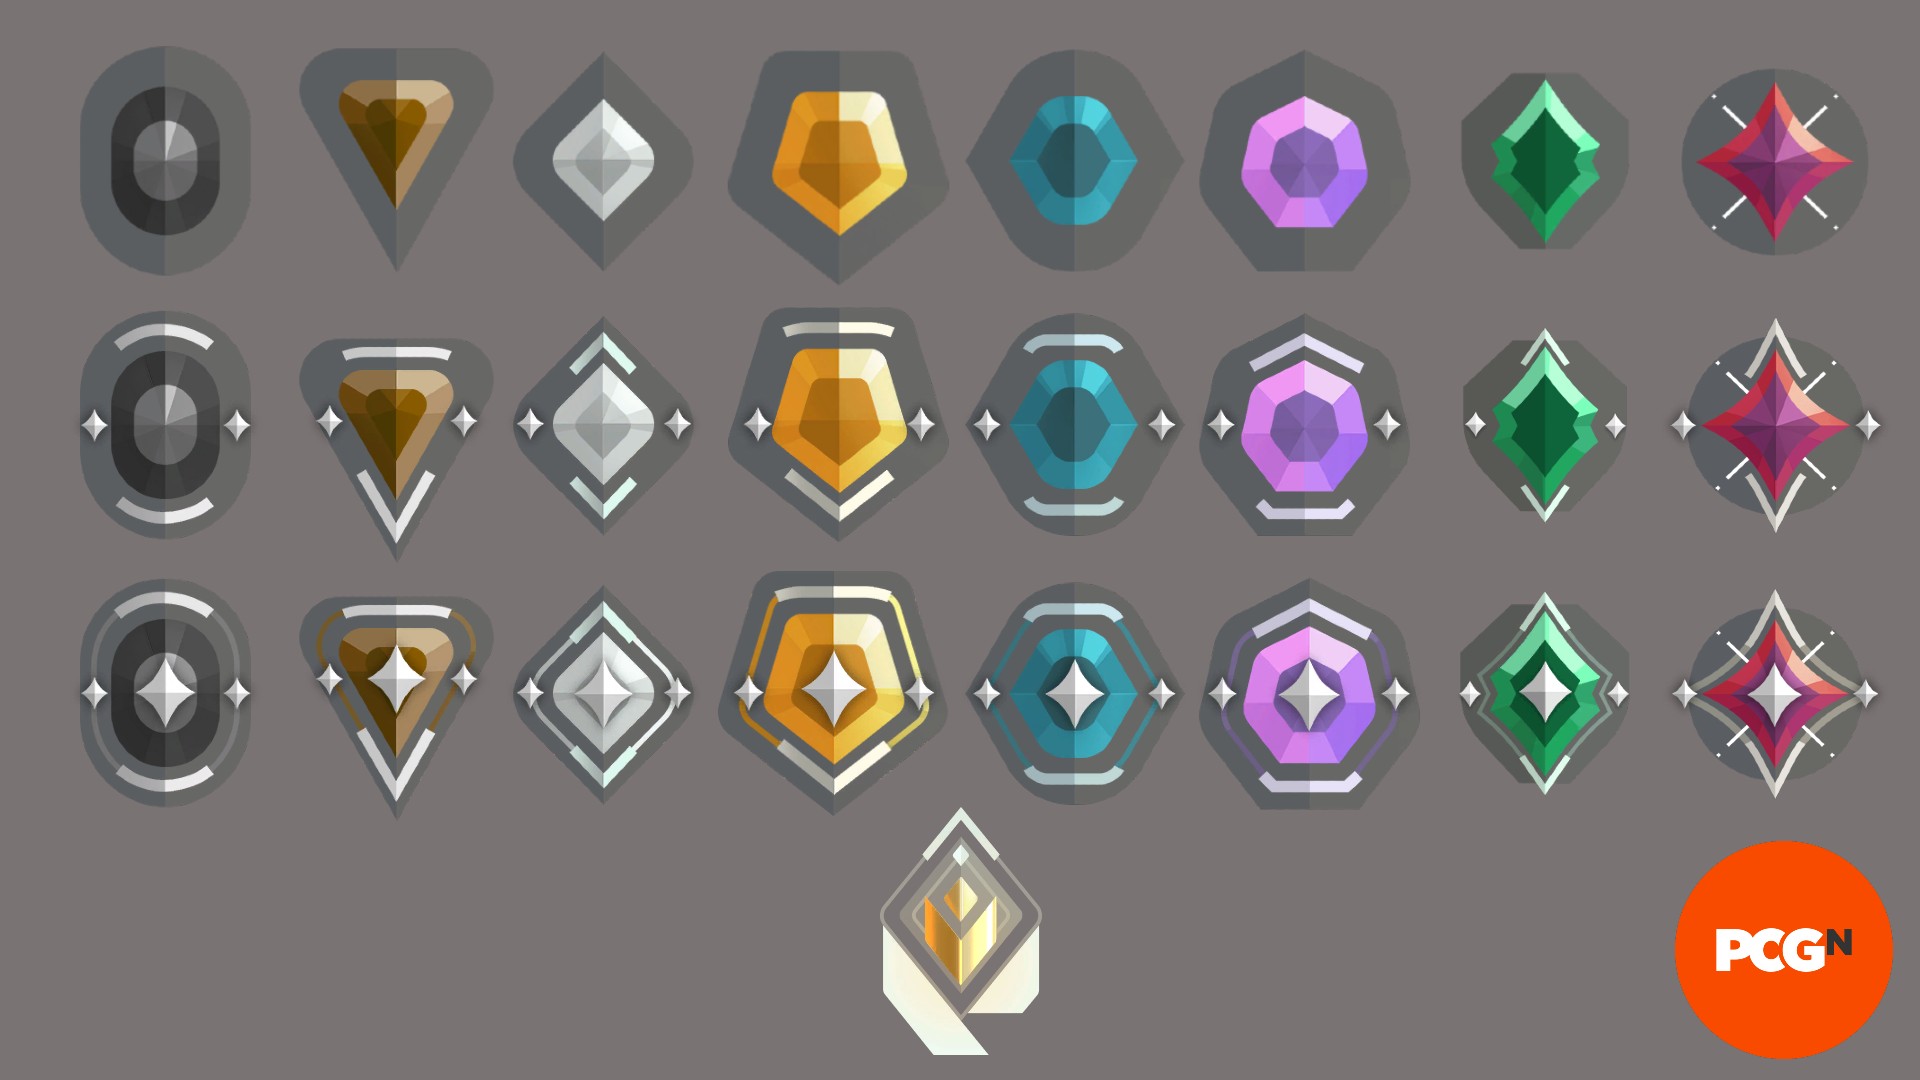 Uma imagem com todos os ícones de rank de valor disponível no jogo